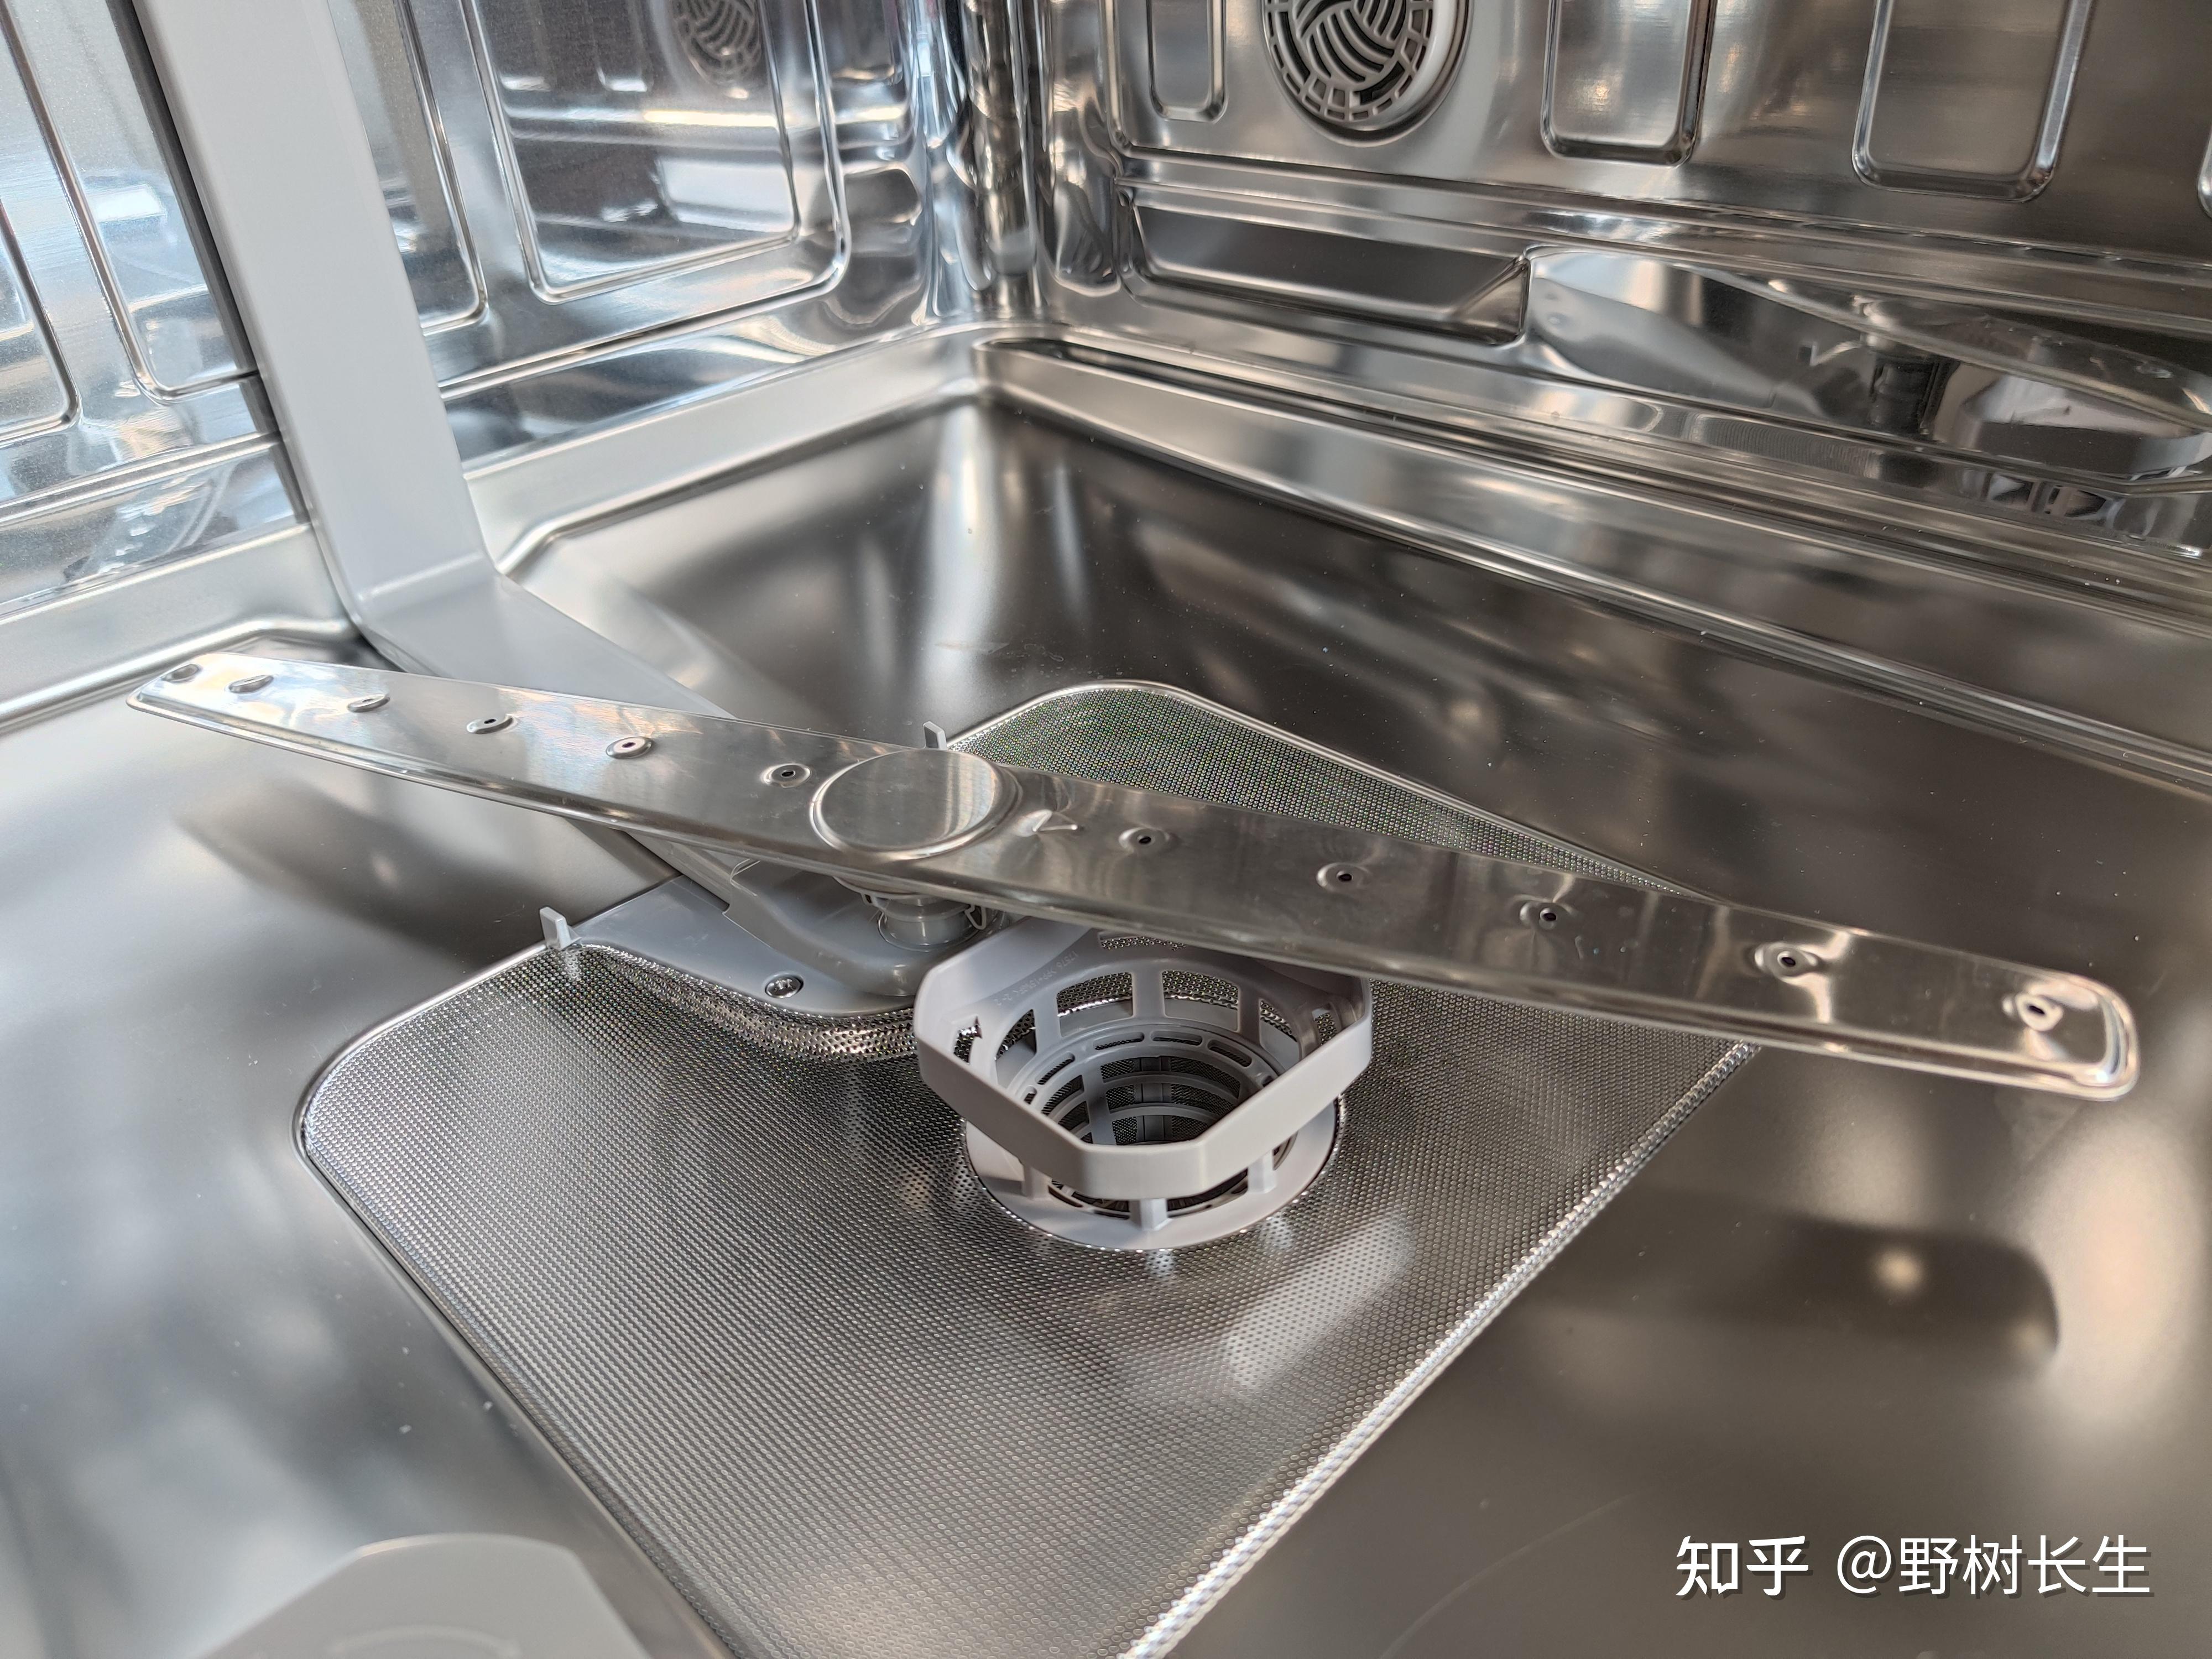 【小白必看】良心国产品牌 专注干态洗碗机——华帝洗碗机对比选购大全 高性价比型号推荐 附赠高清原图（12月12日更新） - 知乎